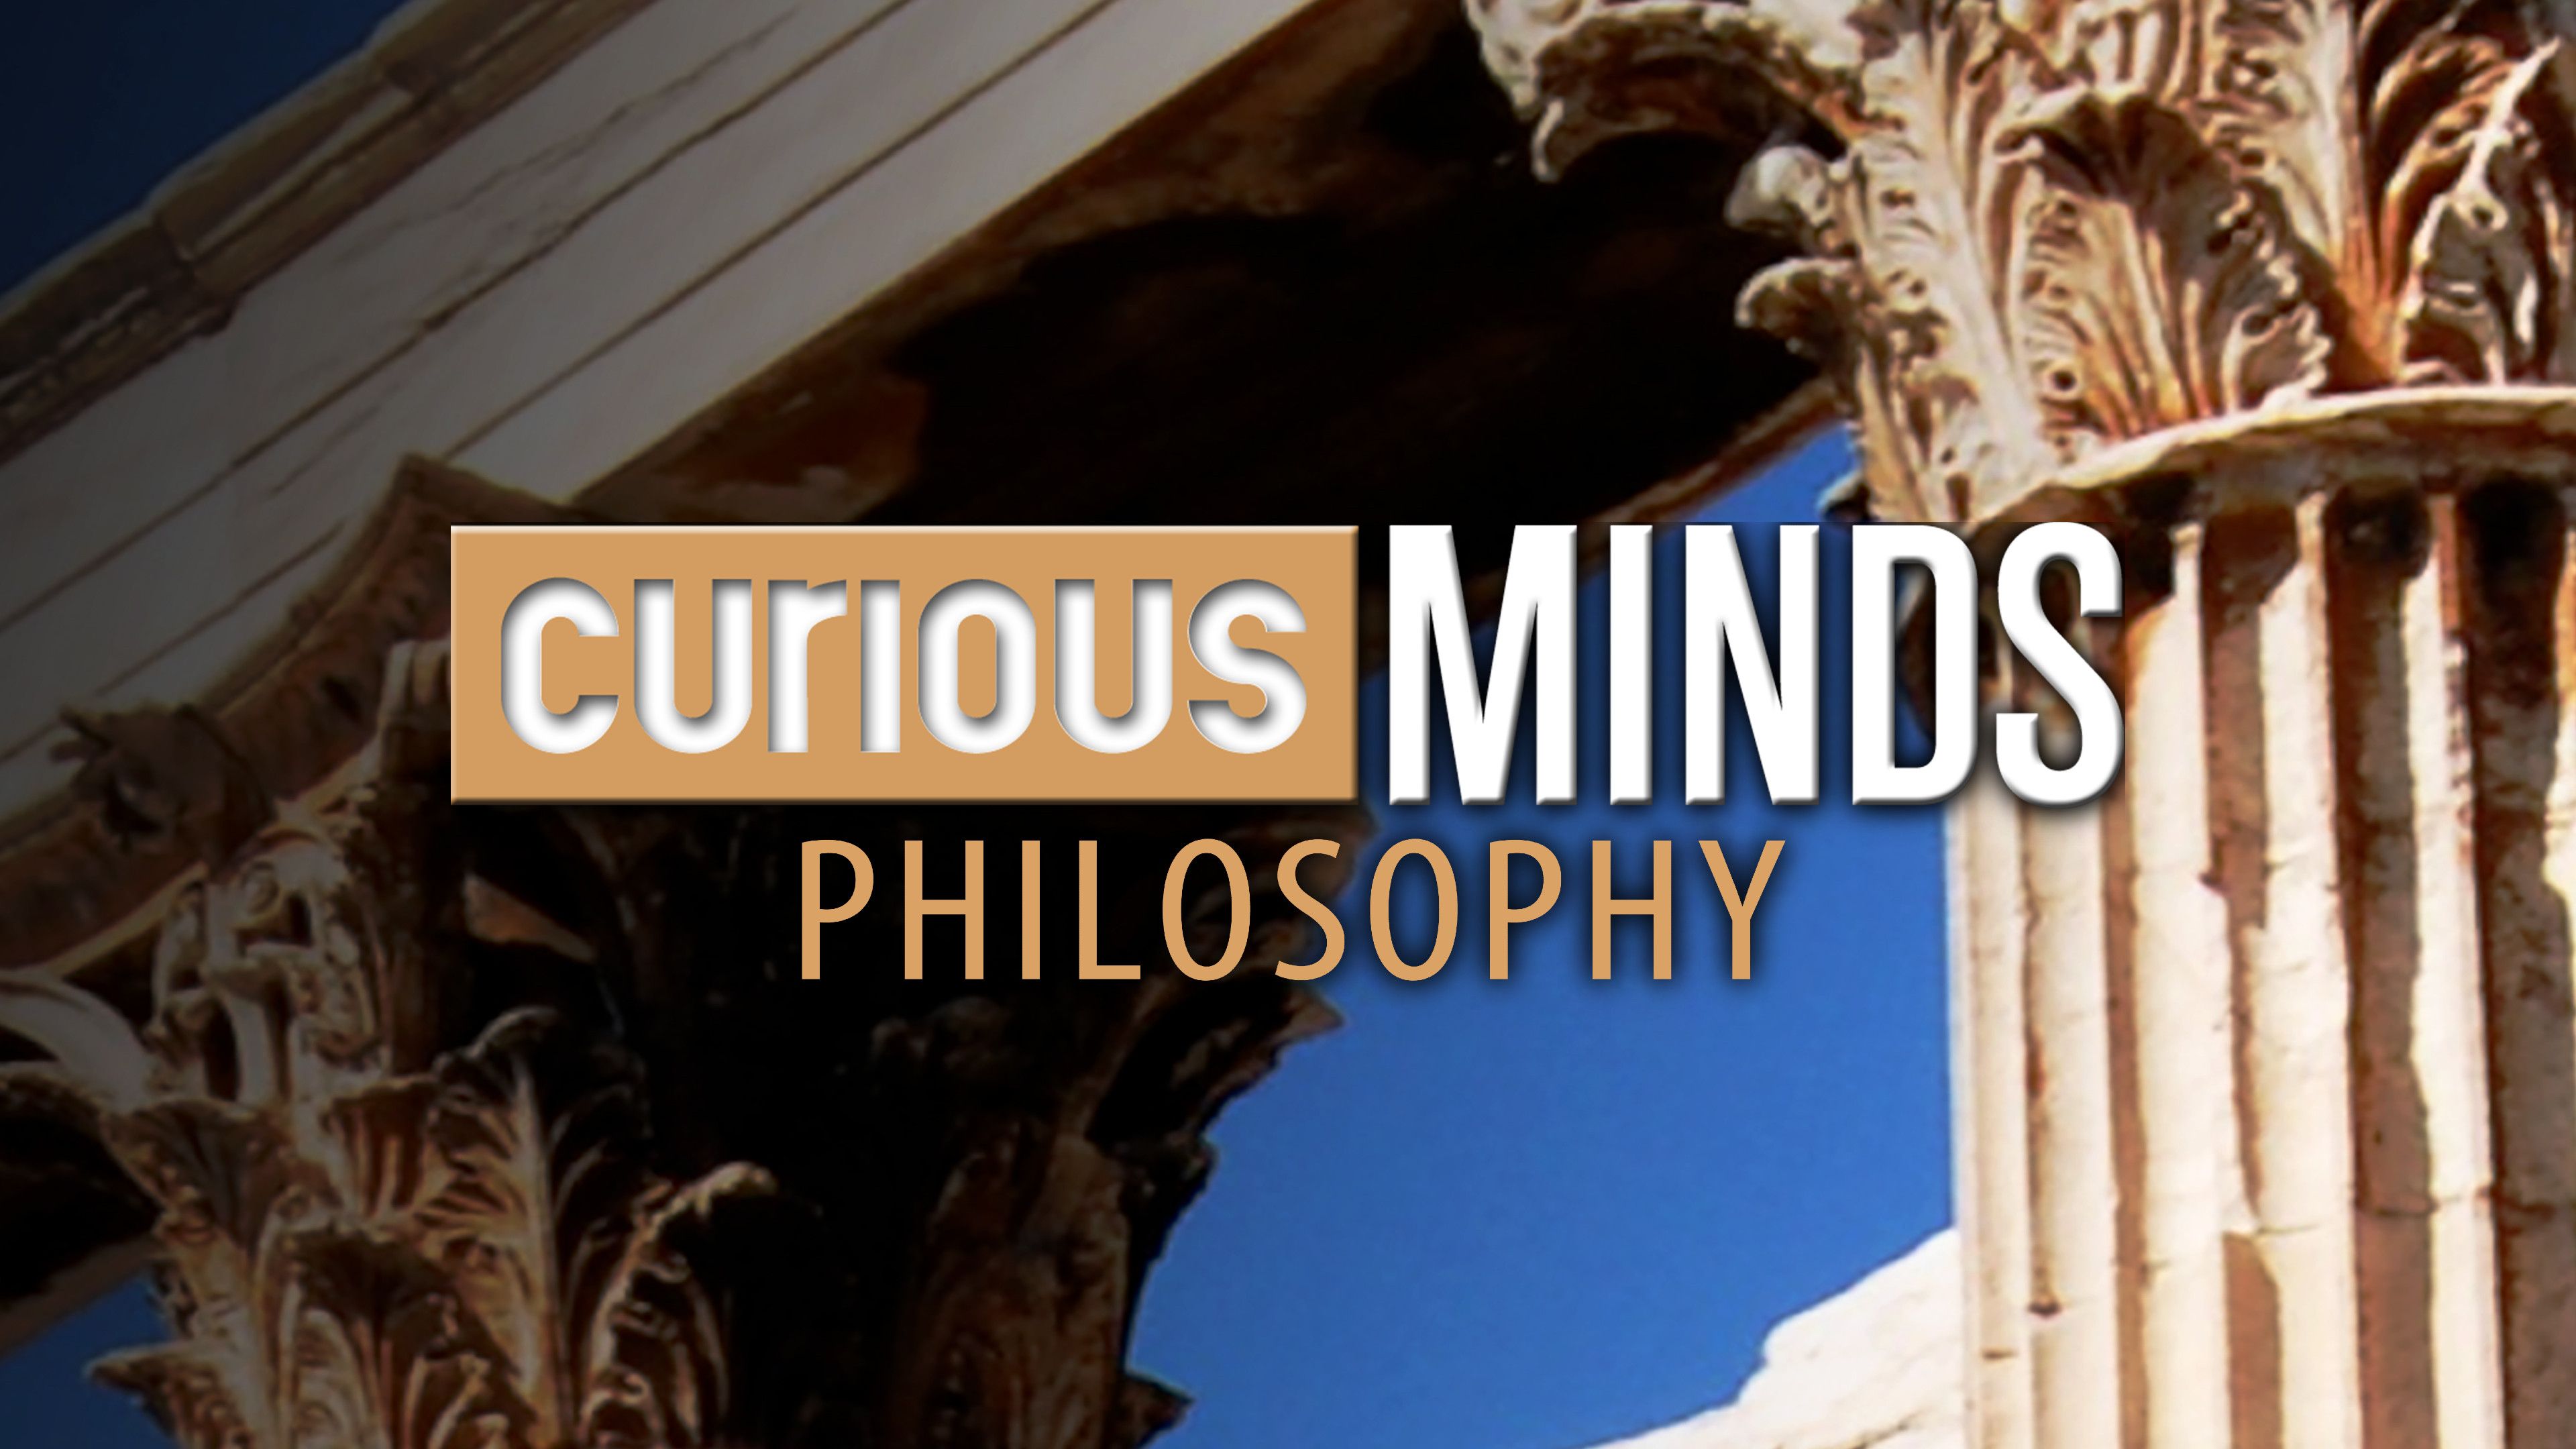 Curious Minds: Philosophy